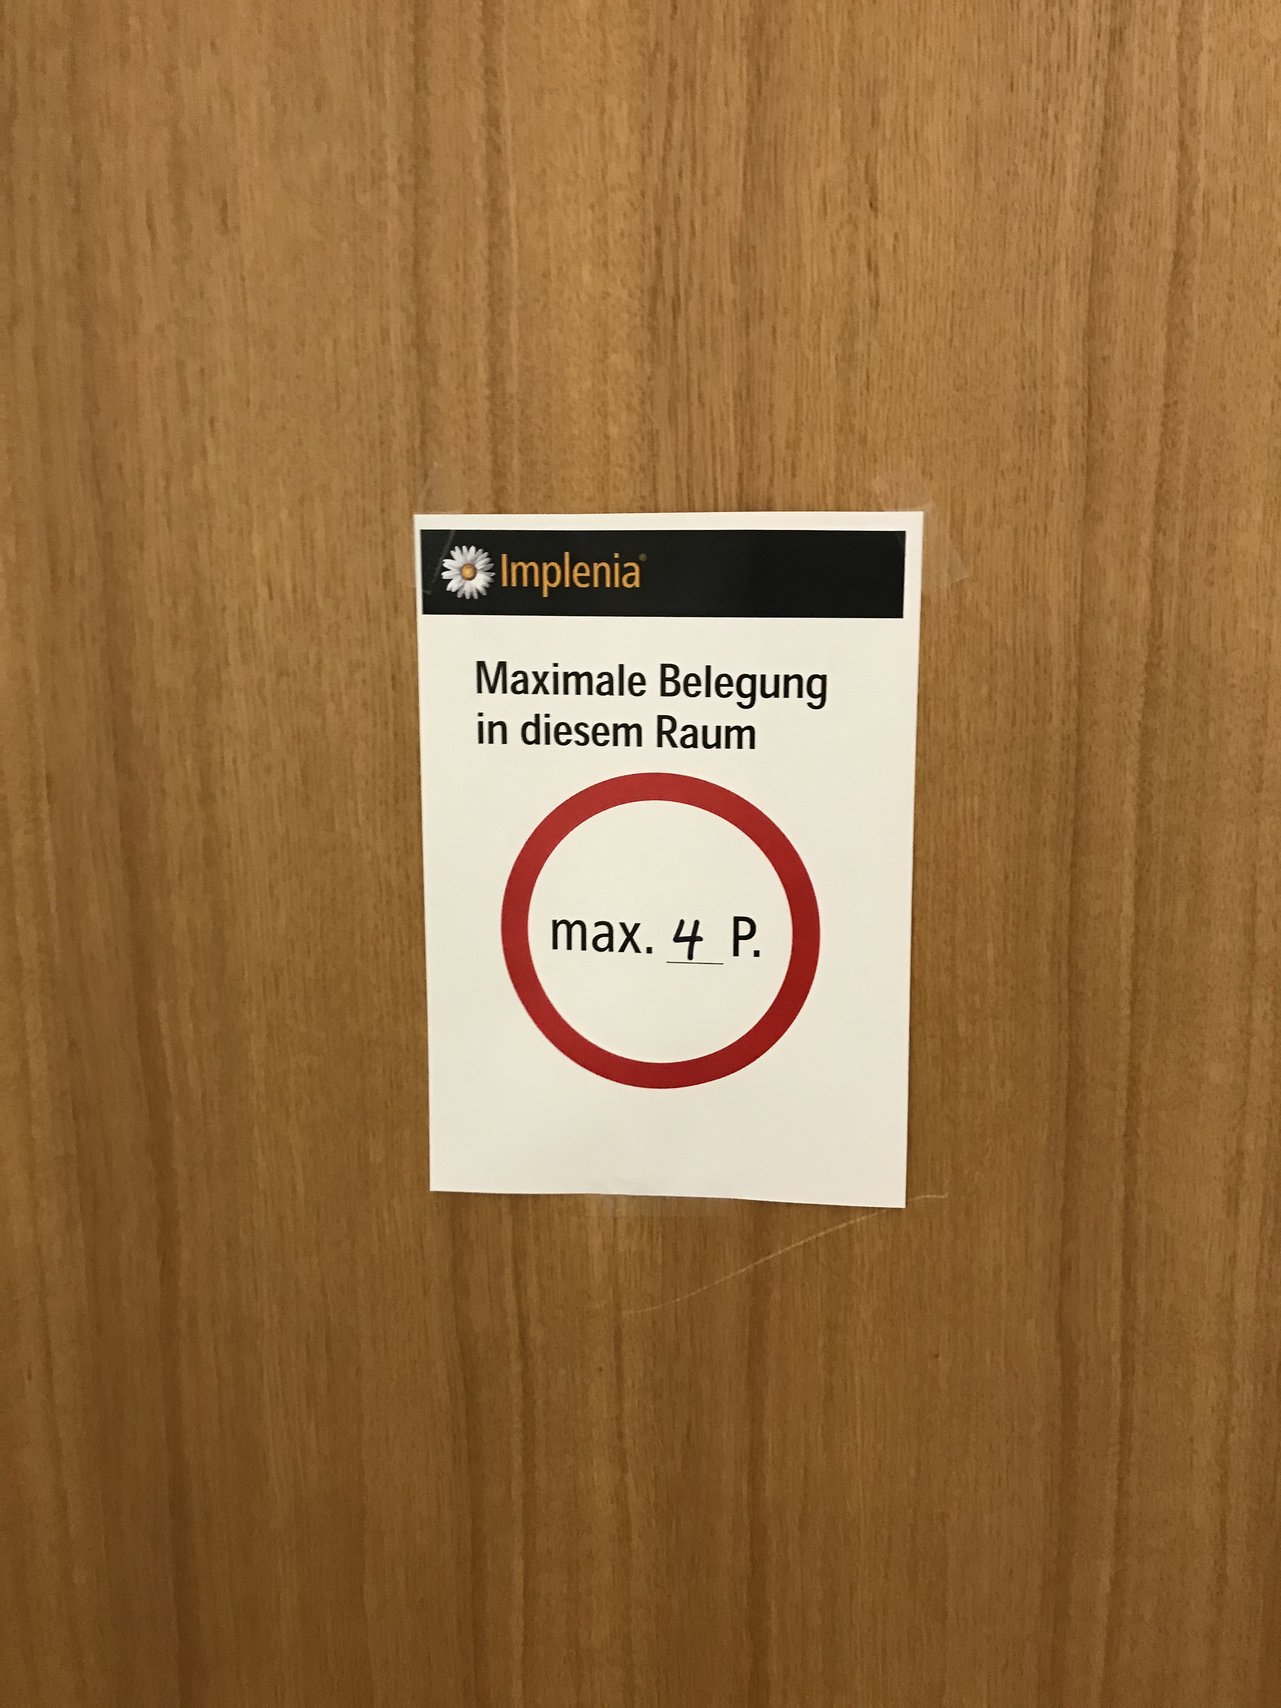 Meeting-Räume: An den Türen der Meetingräume wird auf die Anzahl maximal zugelassener Personen hingewiesen